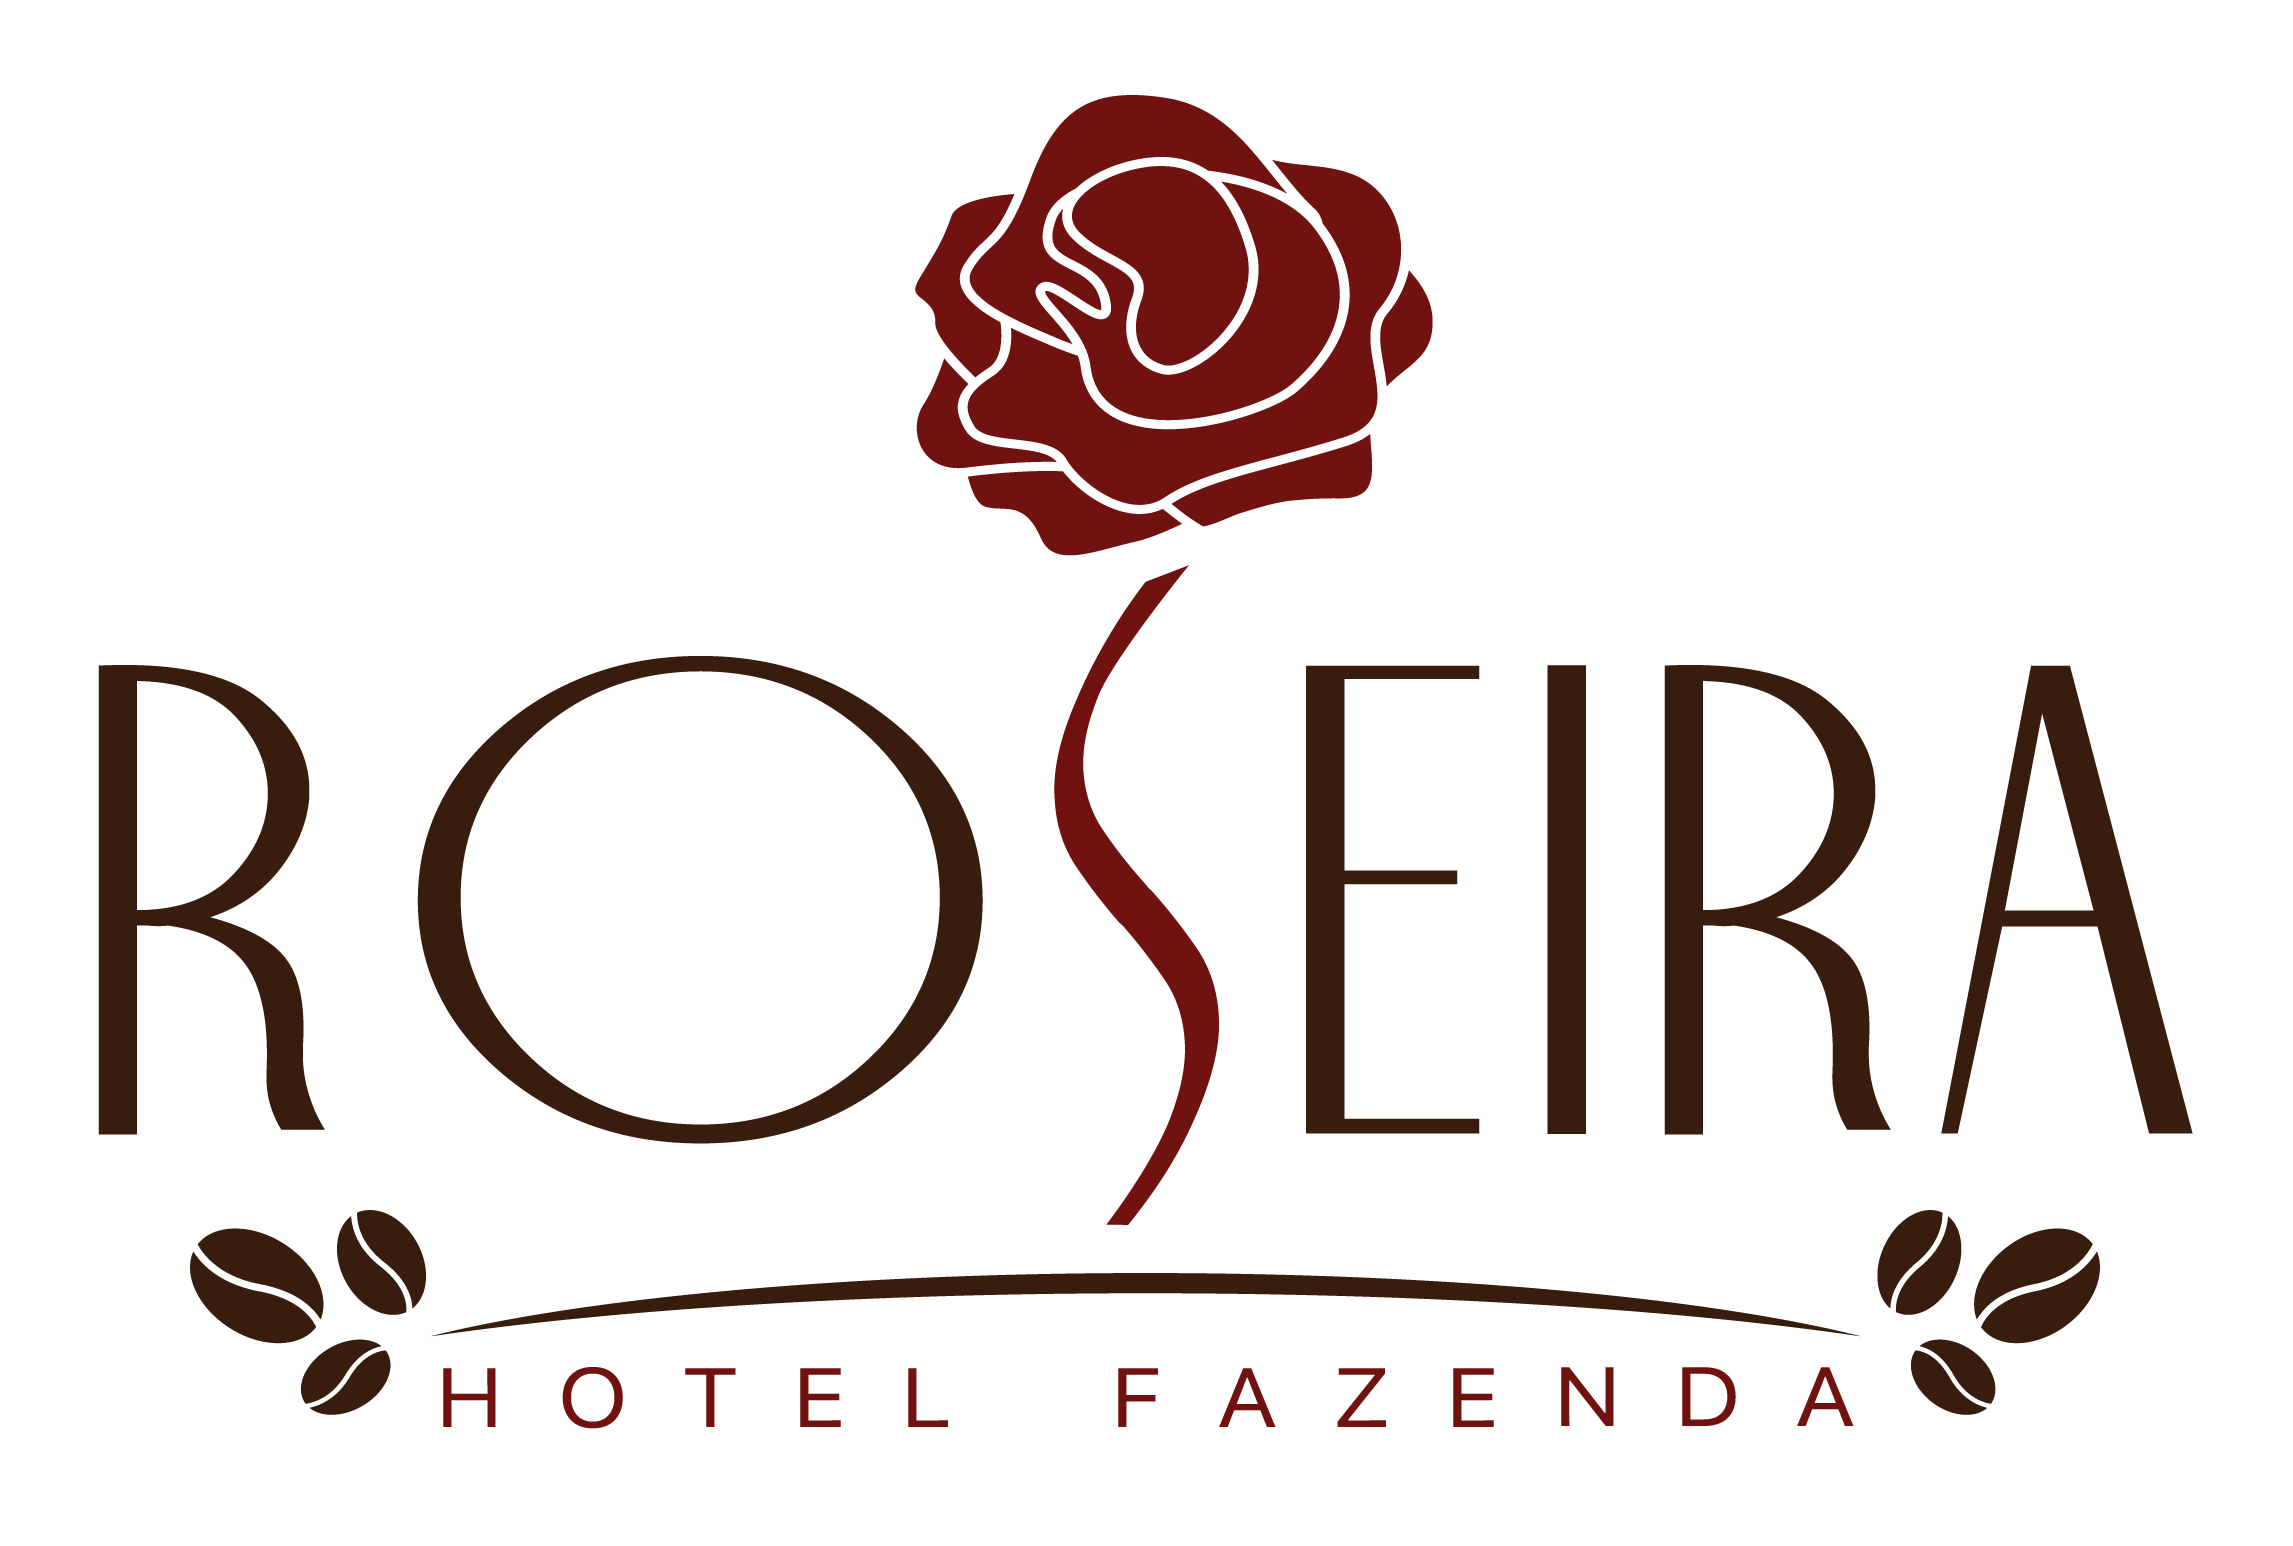 Hotel Fazenda Roseira